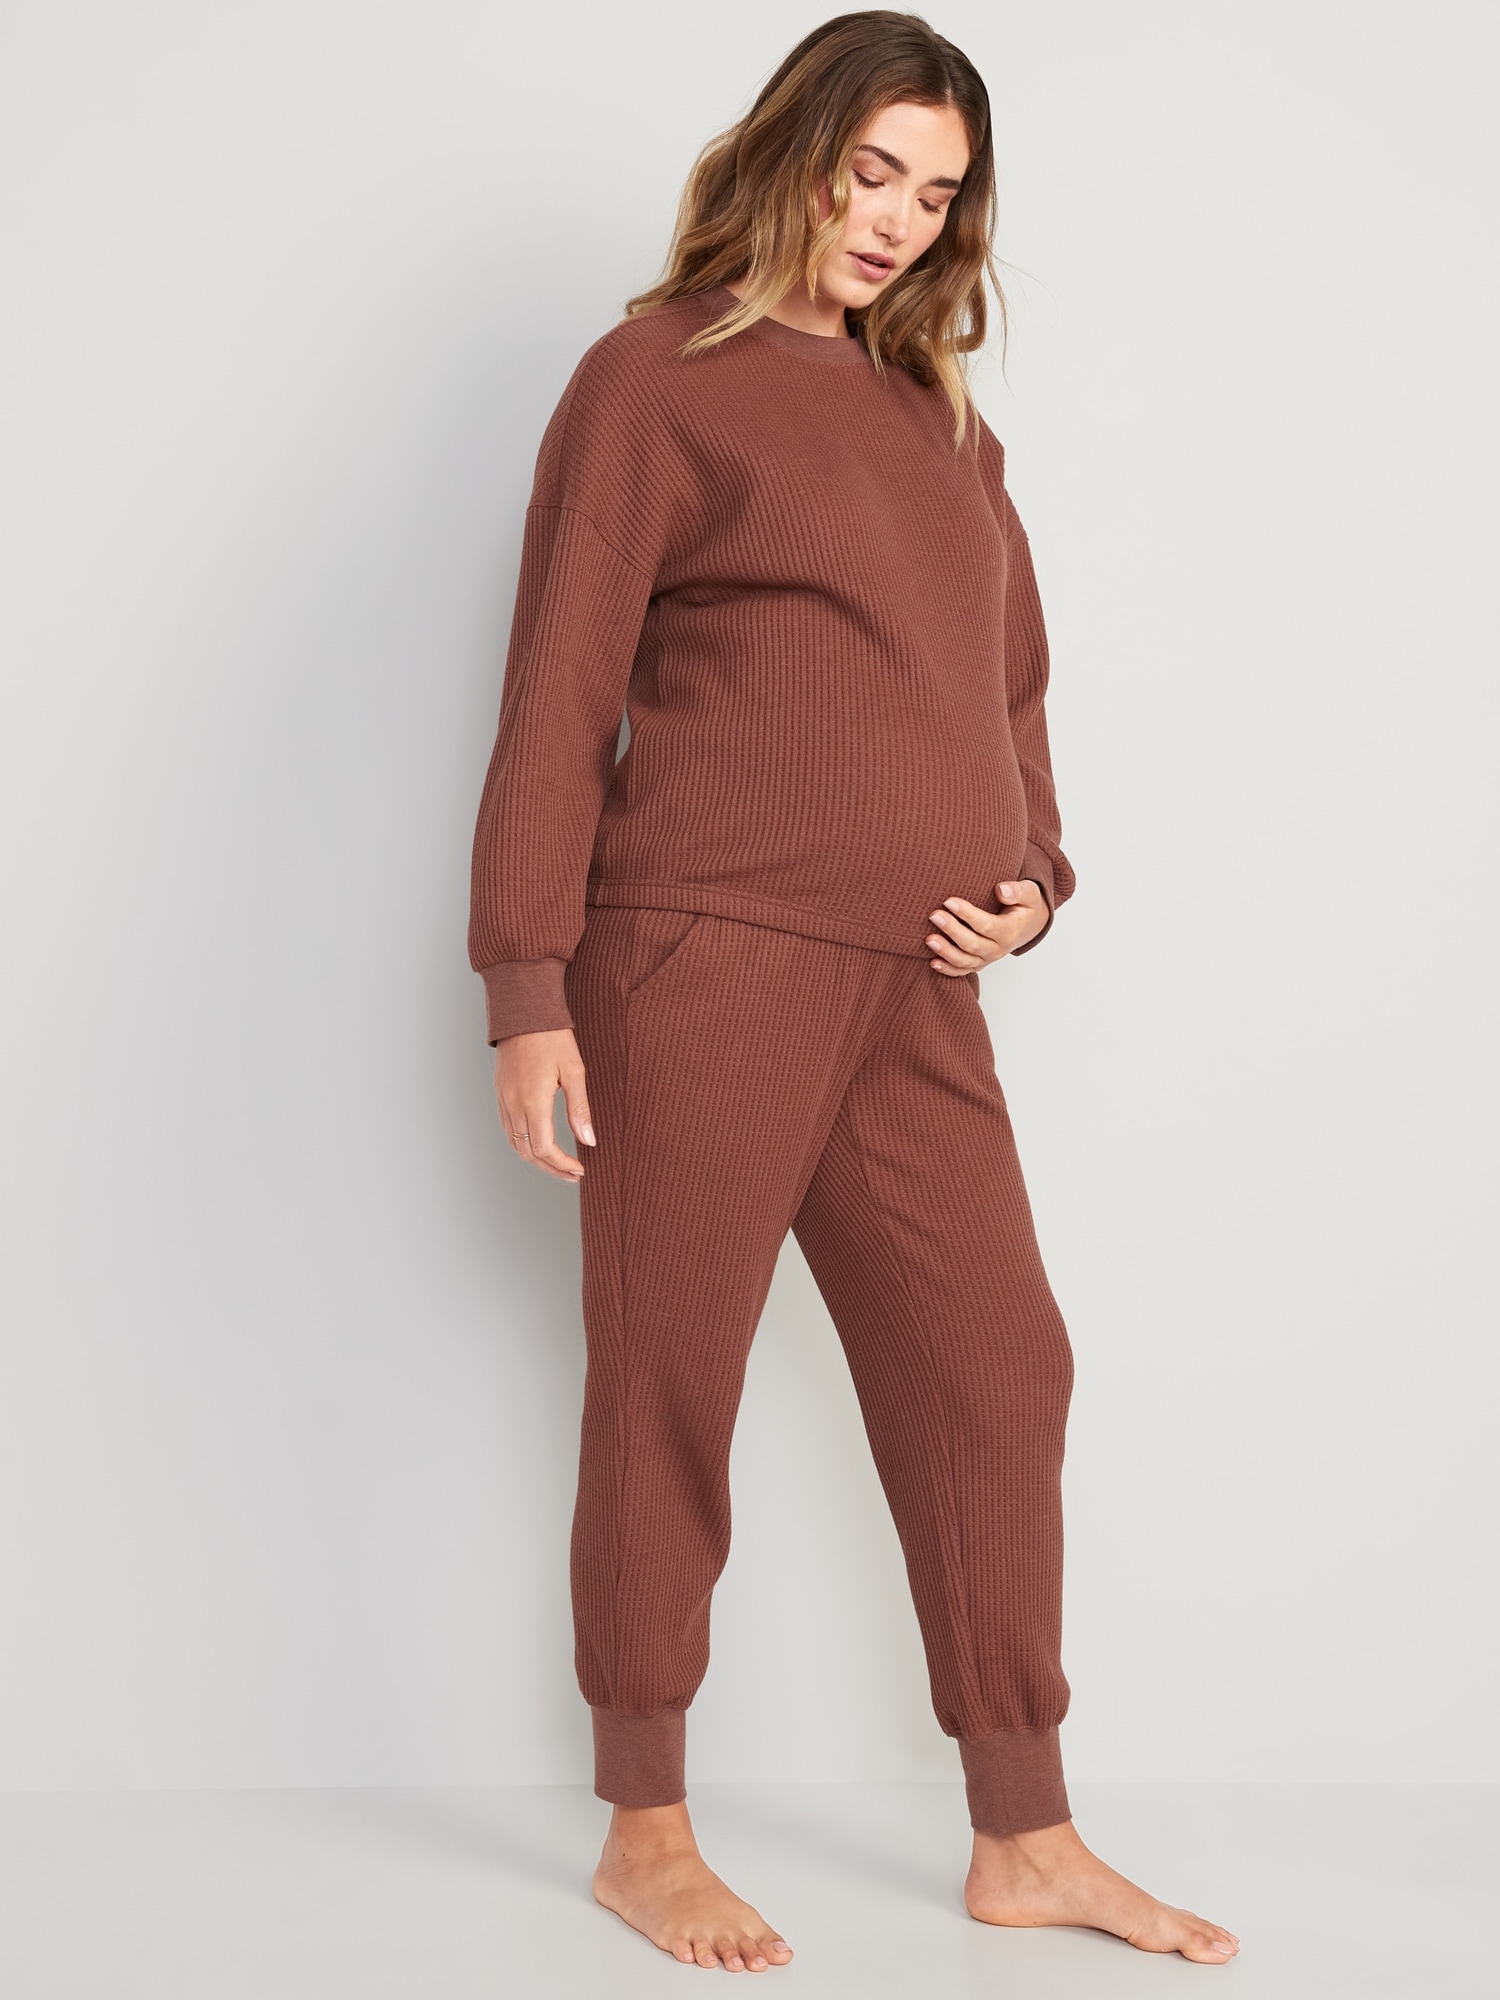 Thermal Knit Pajama Set